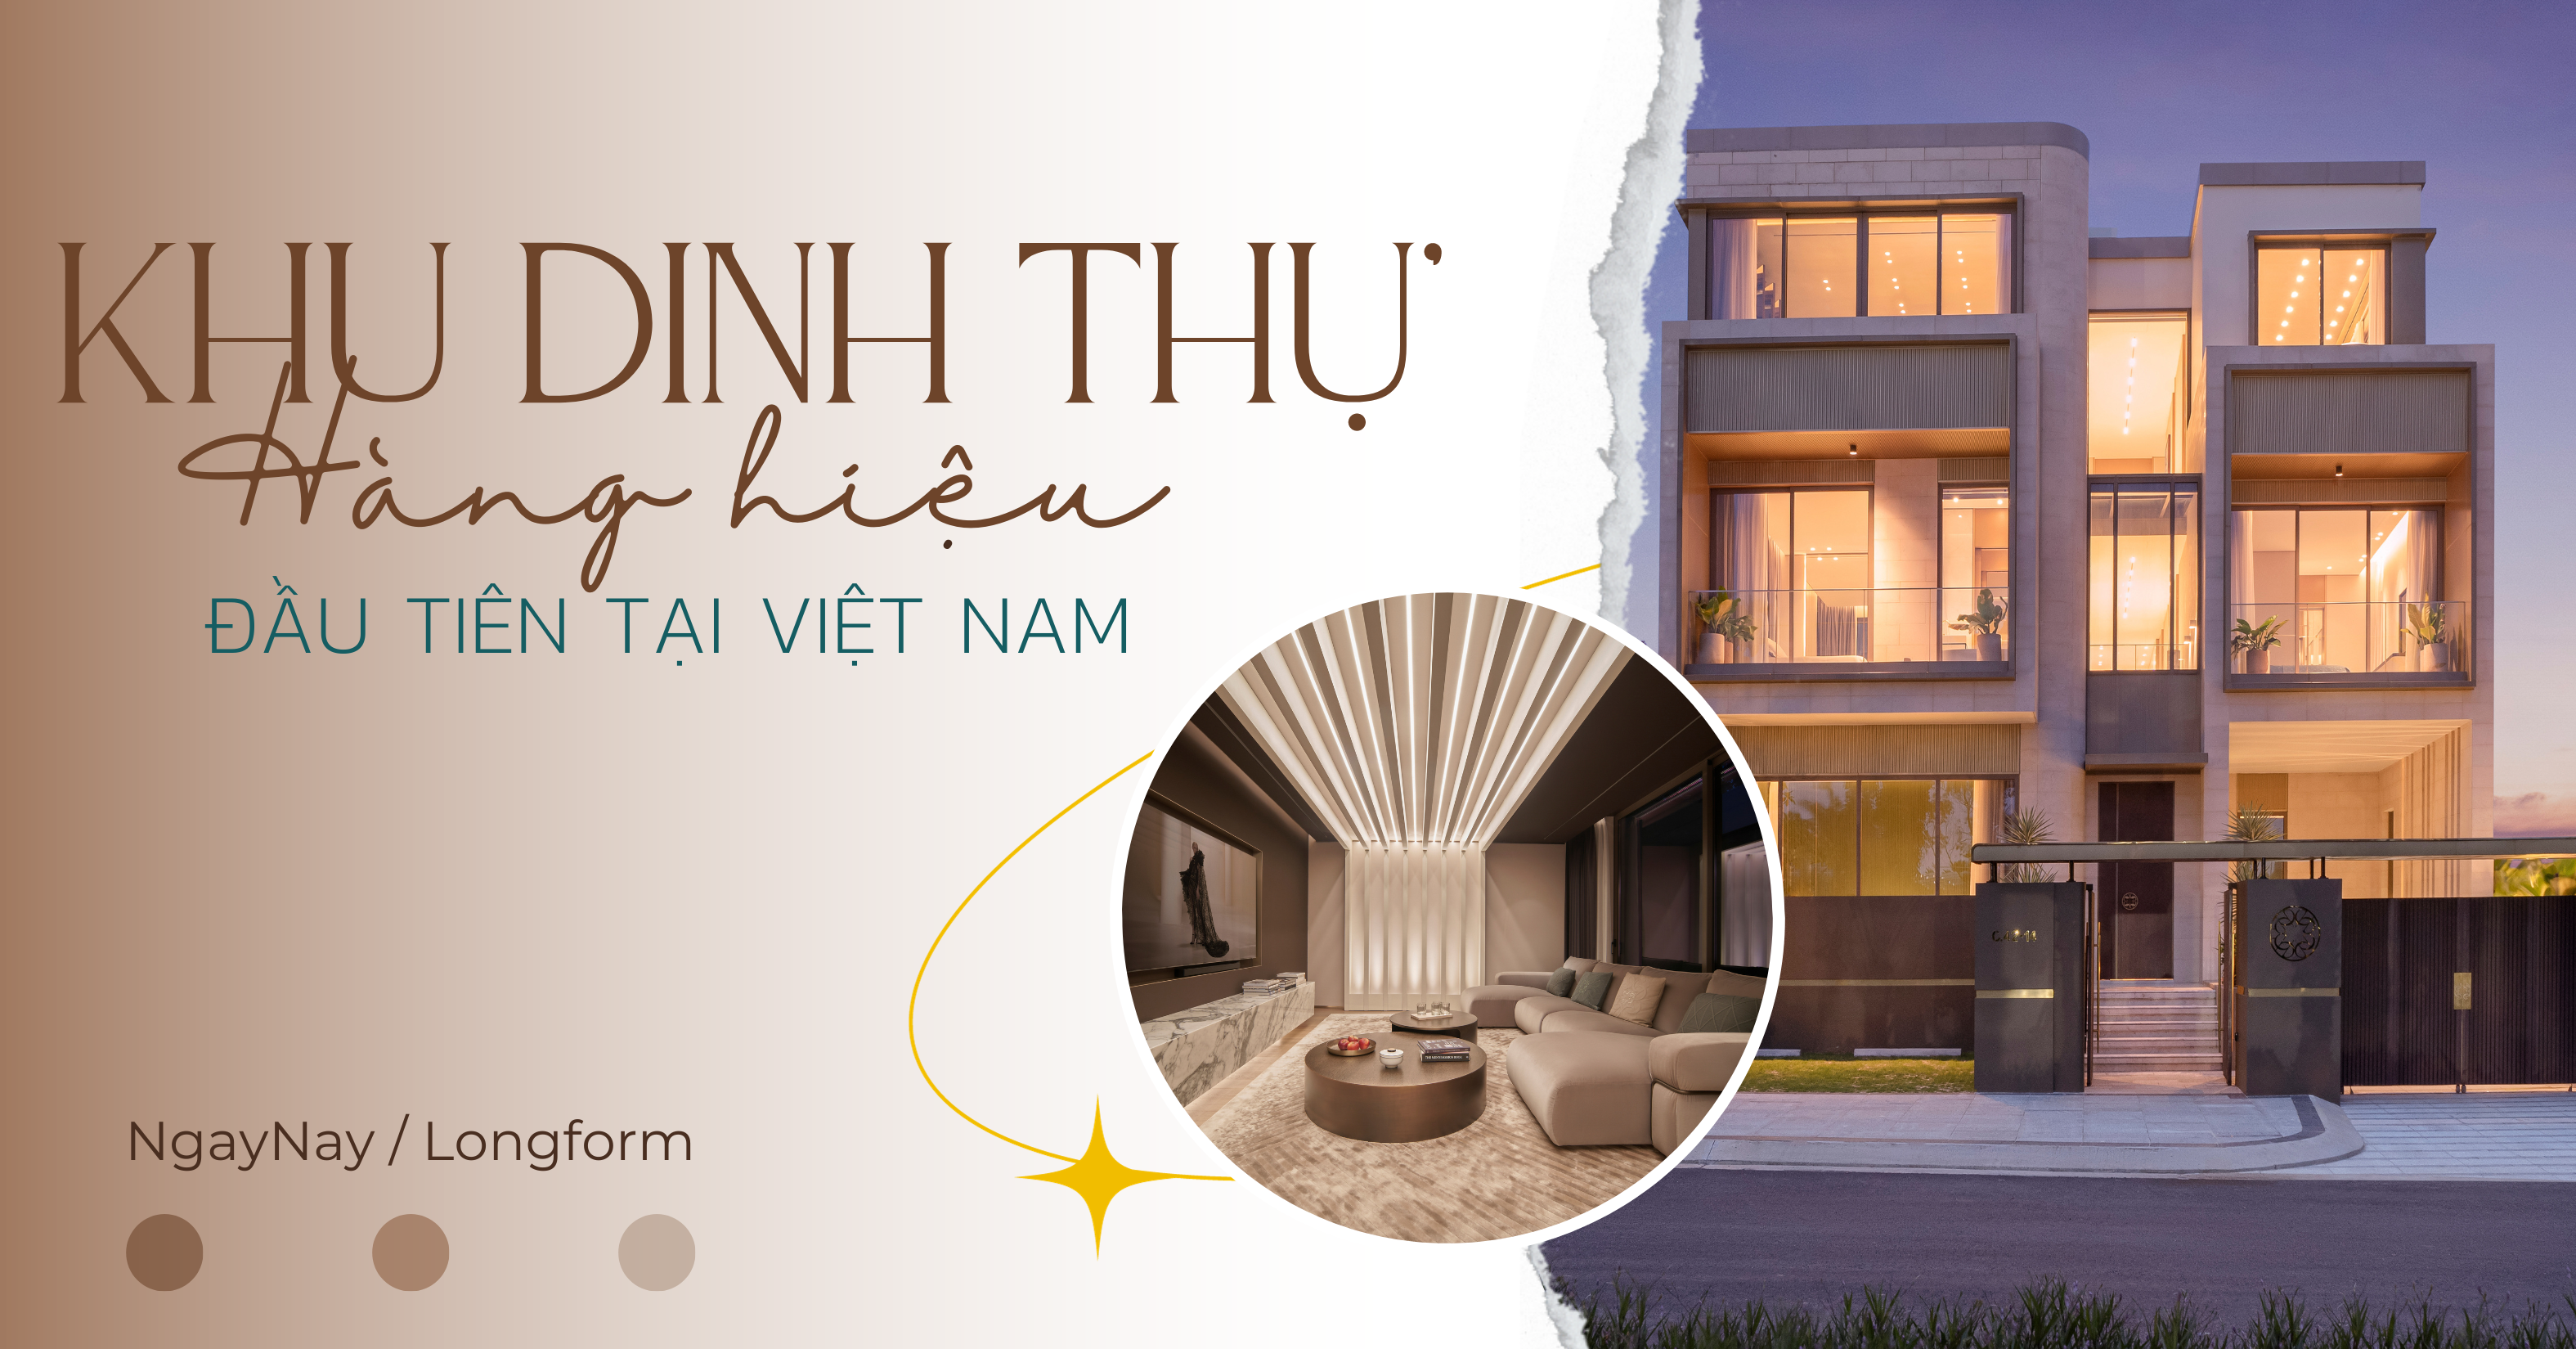 Cận cảnh dinh thự hàng hiệu đầu tiên của ELIE SAAB tại Việt Nam